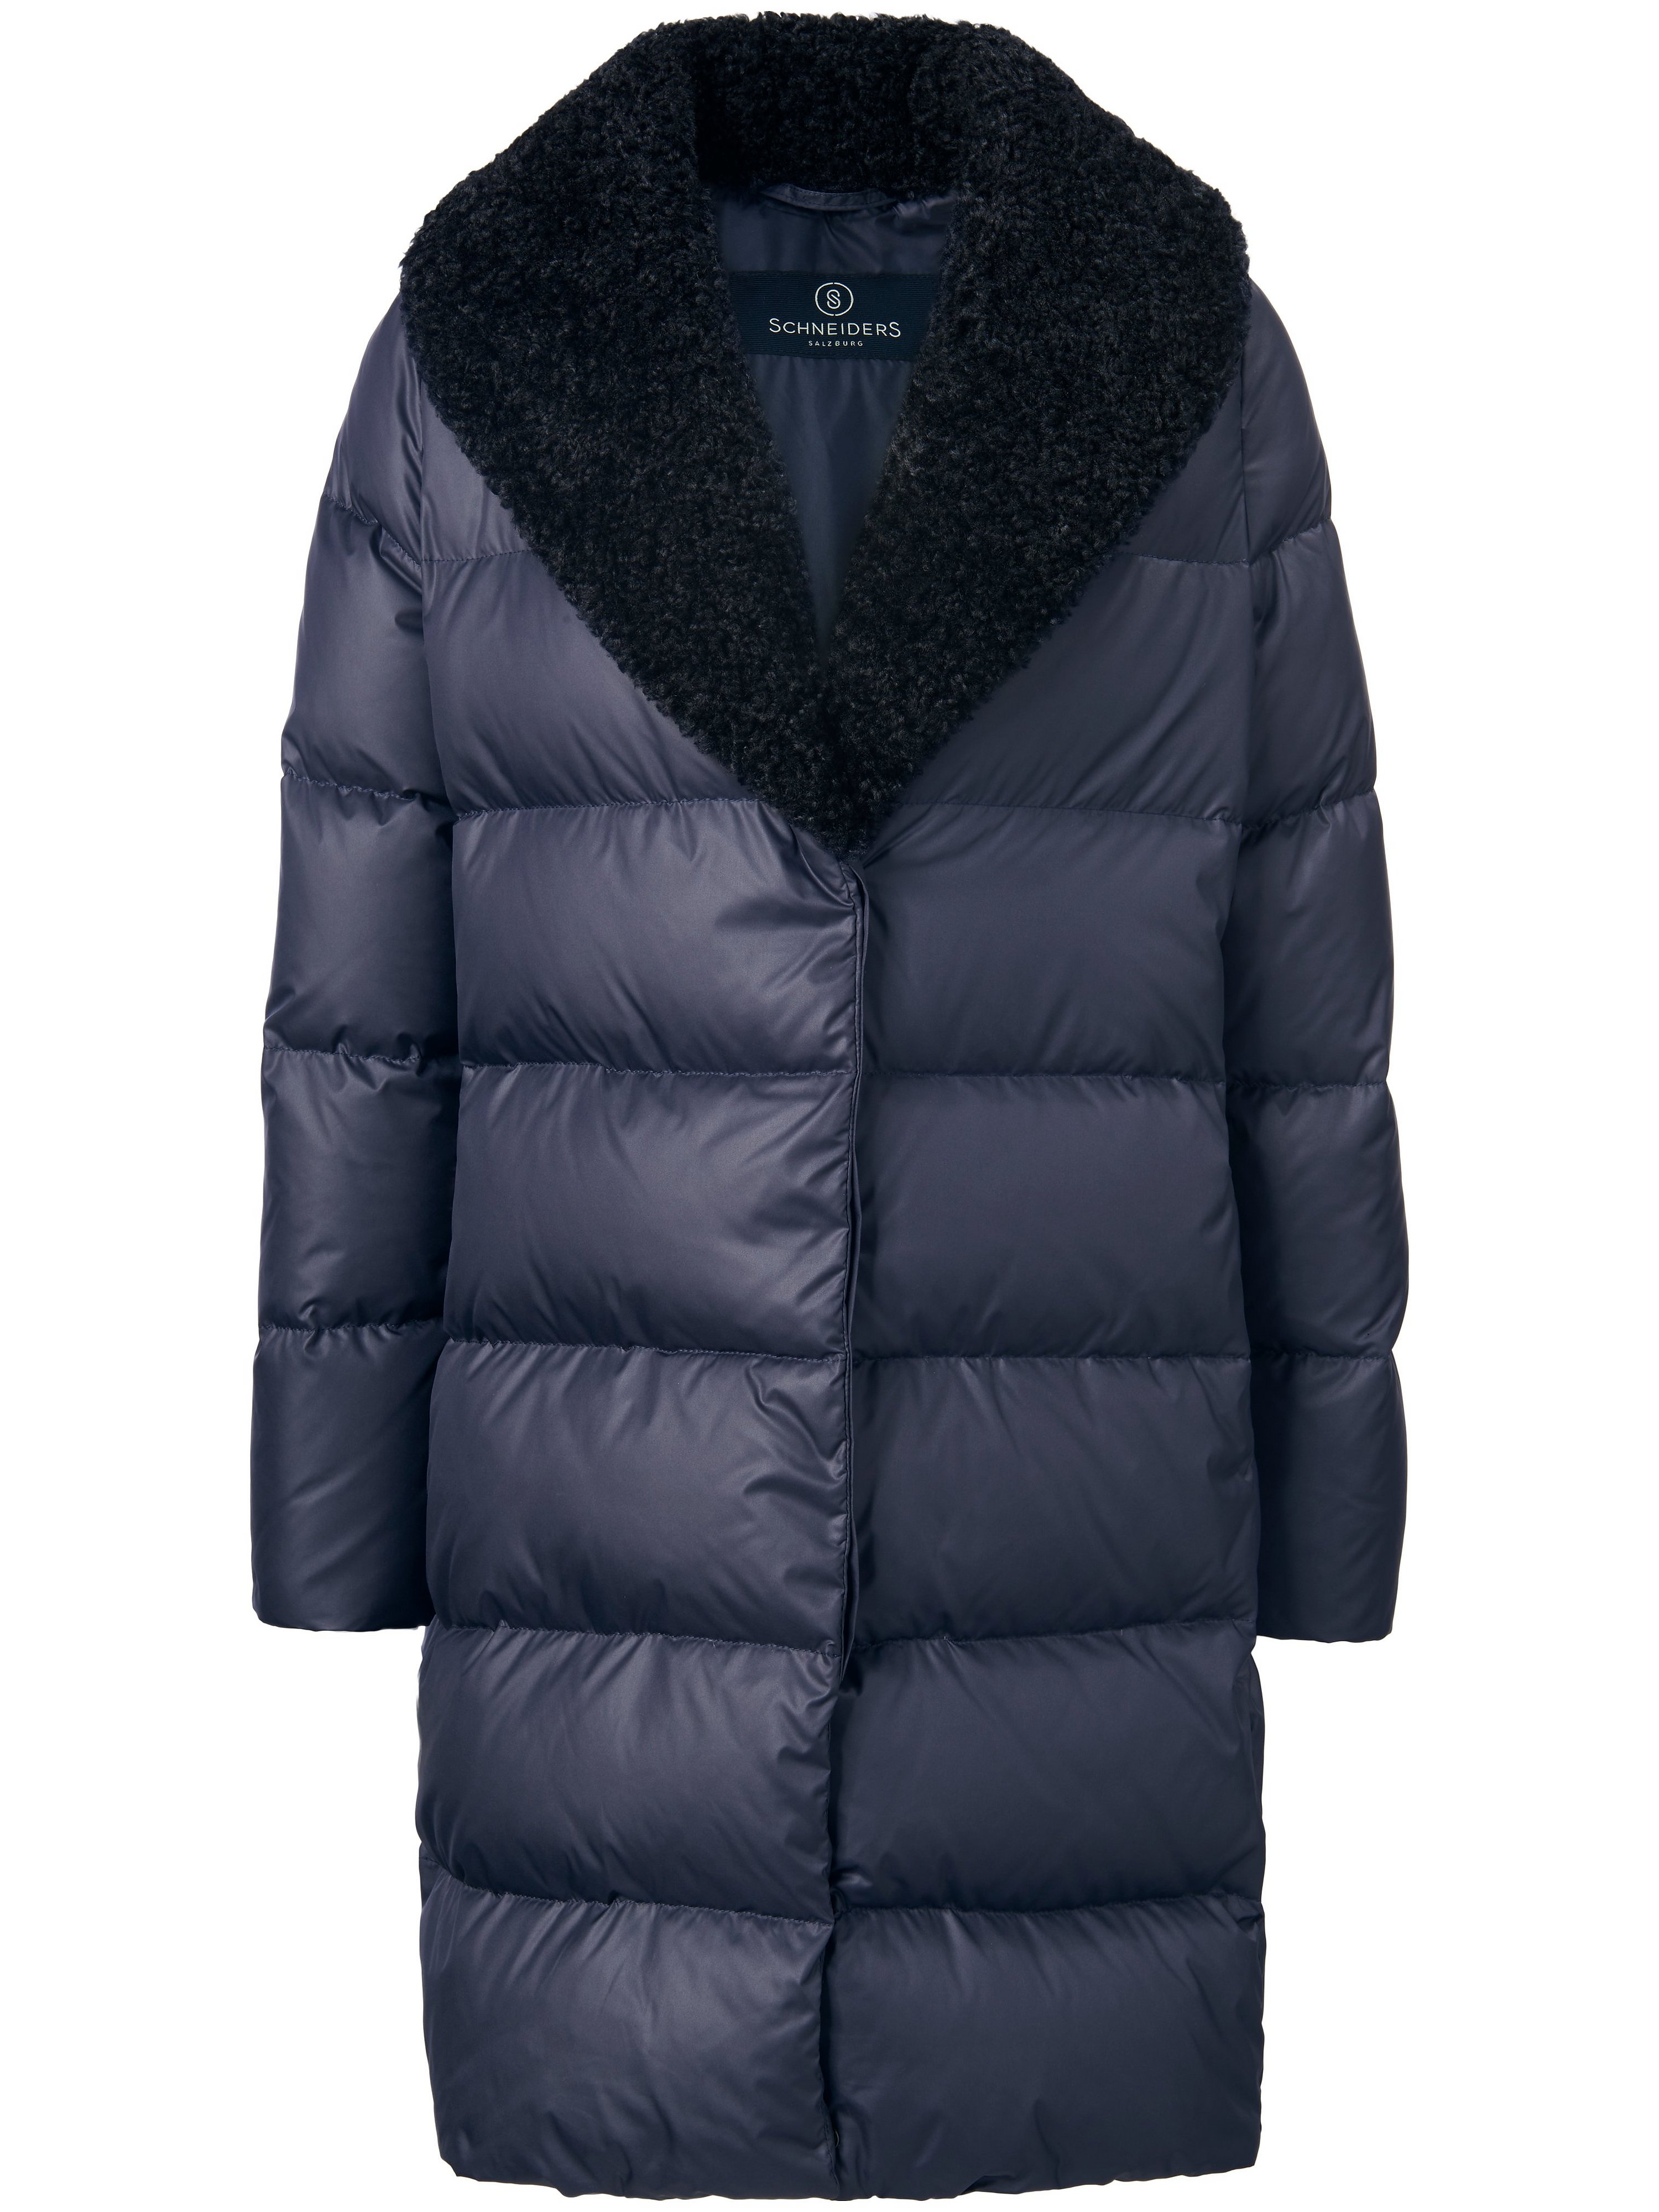 Le manteau 3/4 doudoune large col tailleur  Schneiders Salzburg bleu